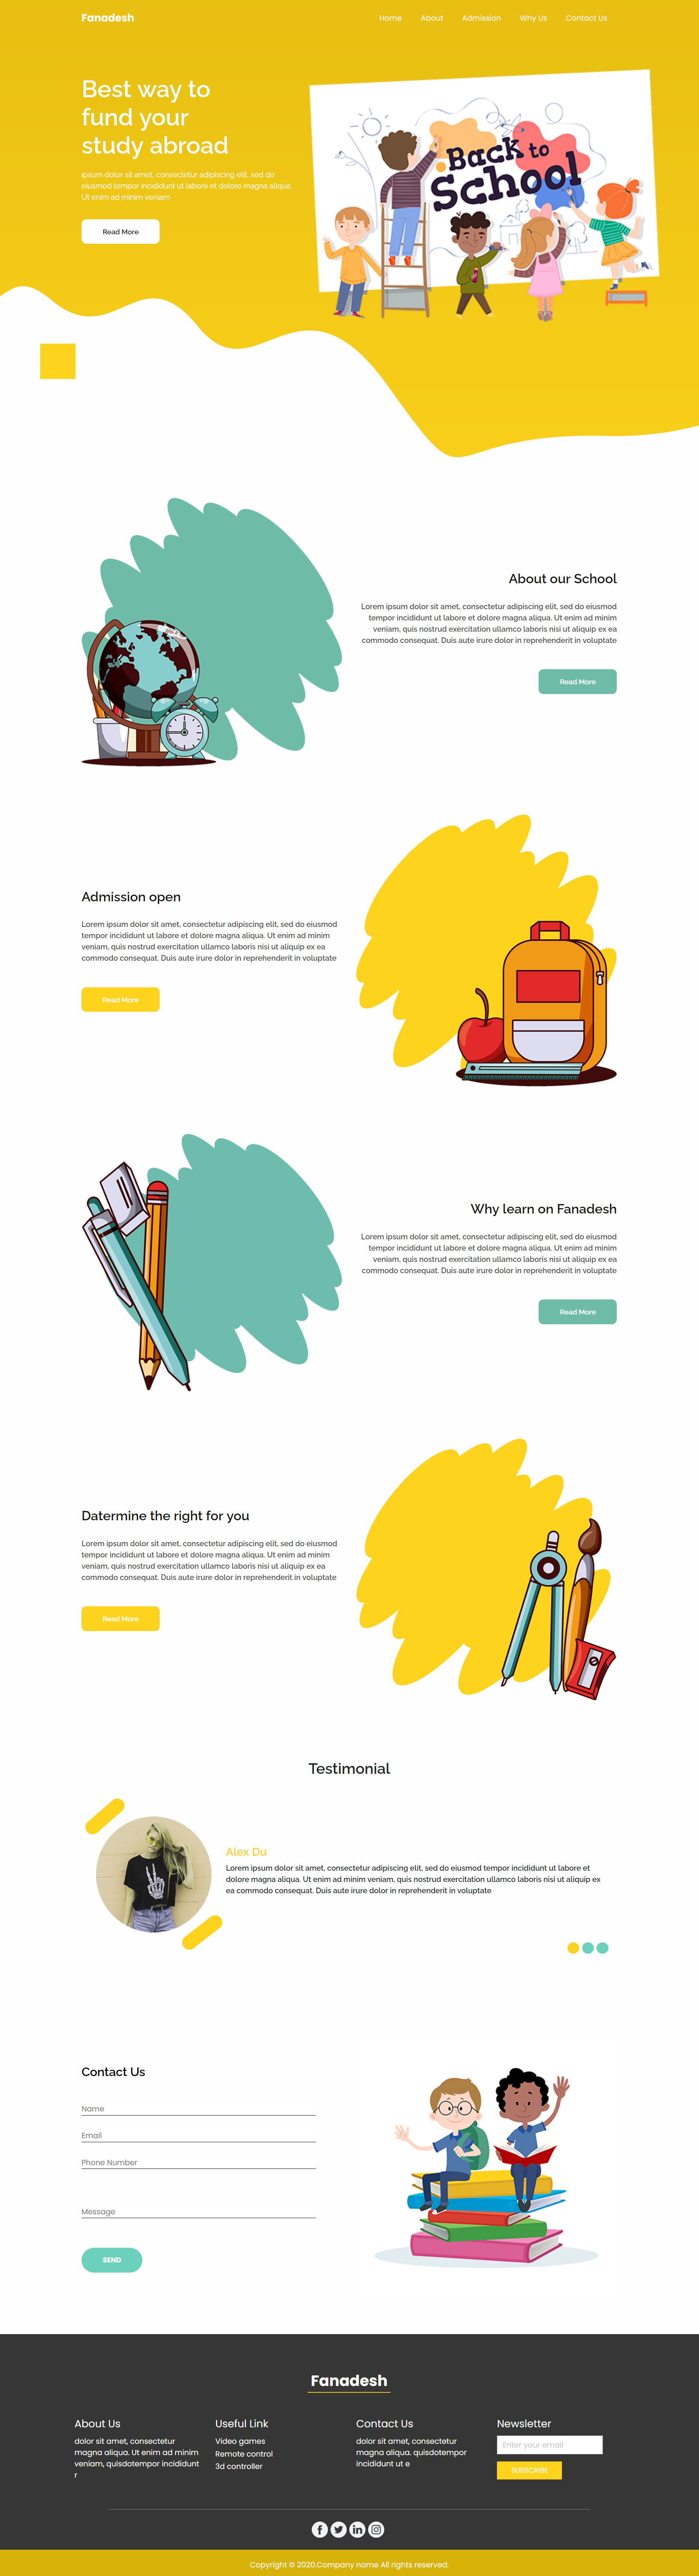 黄色卡通风格响应式幼教美术培训企业网站模板